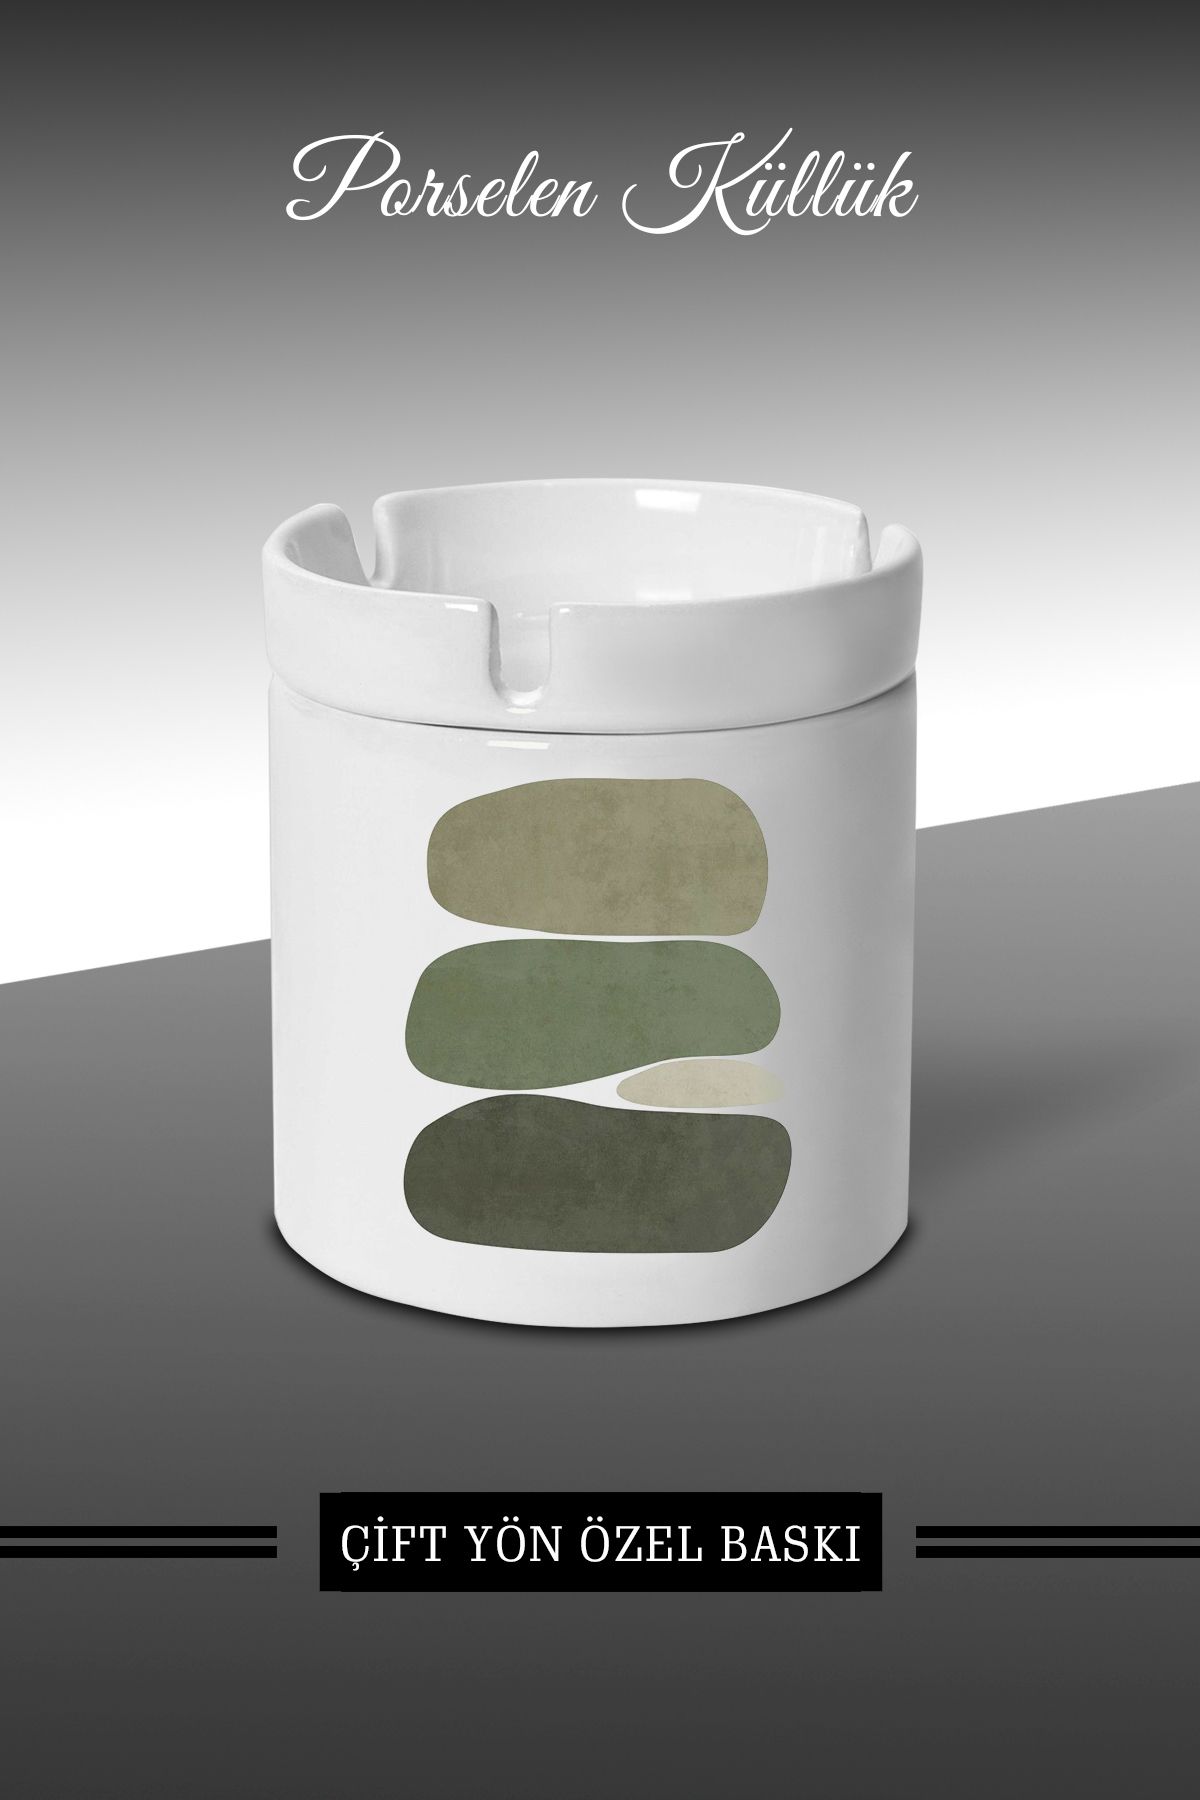 yhfoto Yeşil Ton Desen Tasarımlı Küllük - Porselen Küllük - Kül Tablası